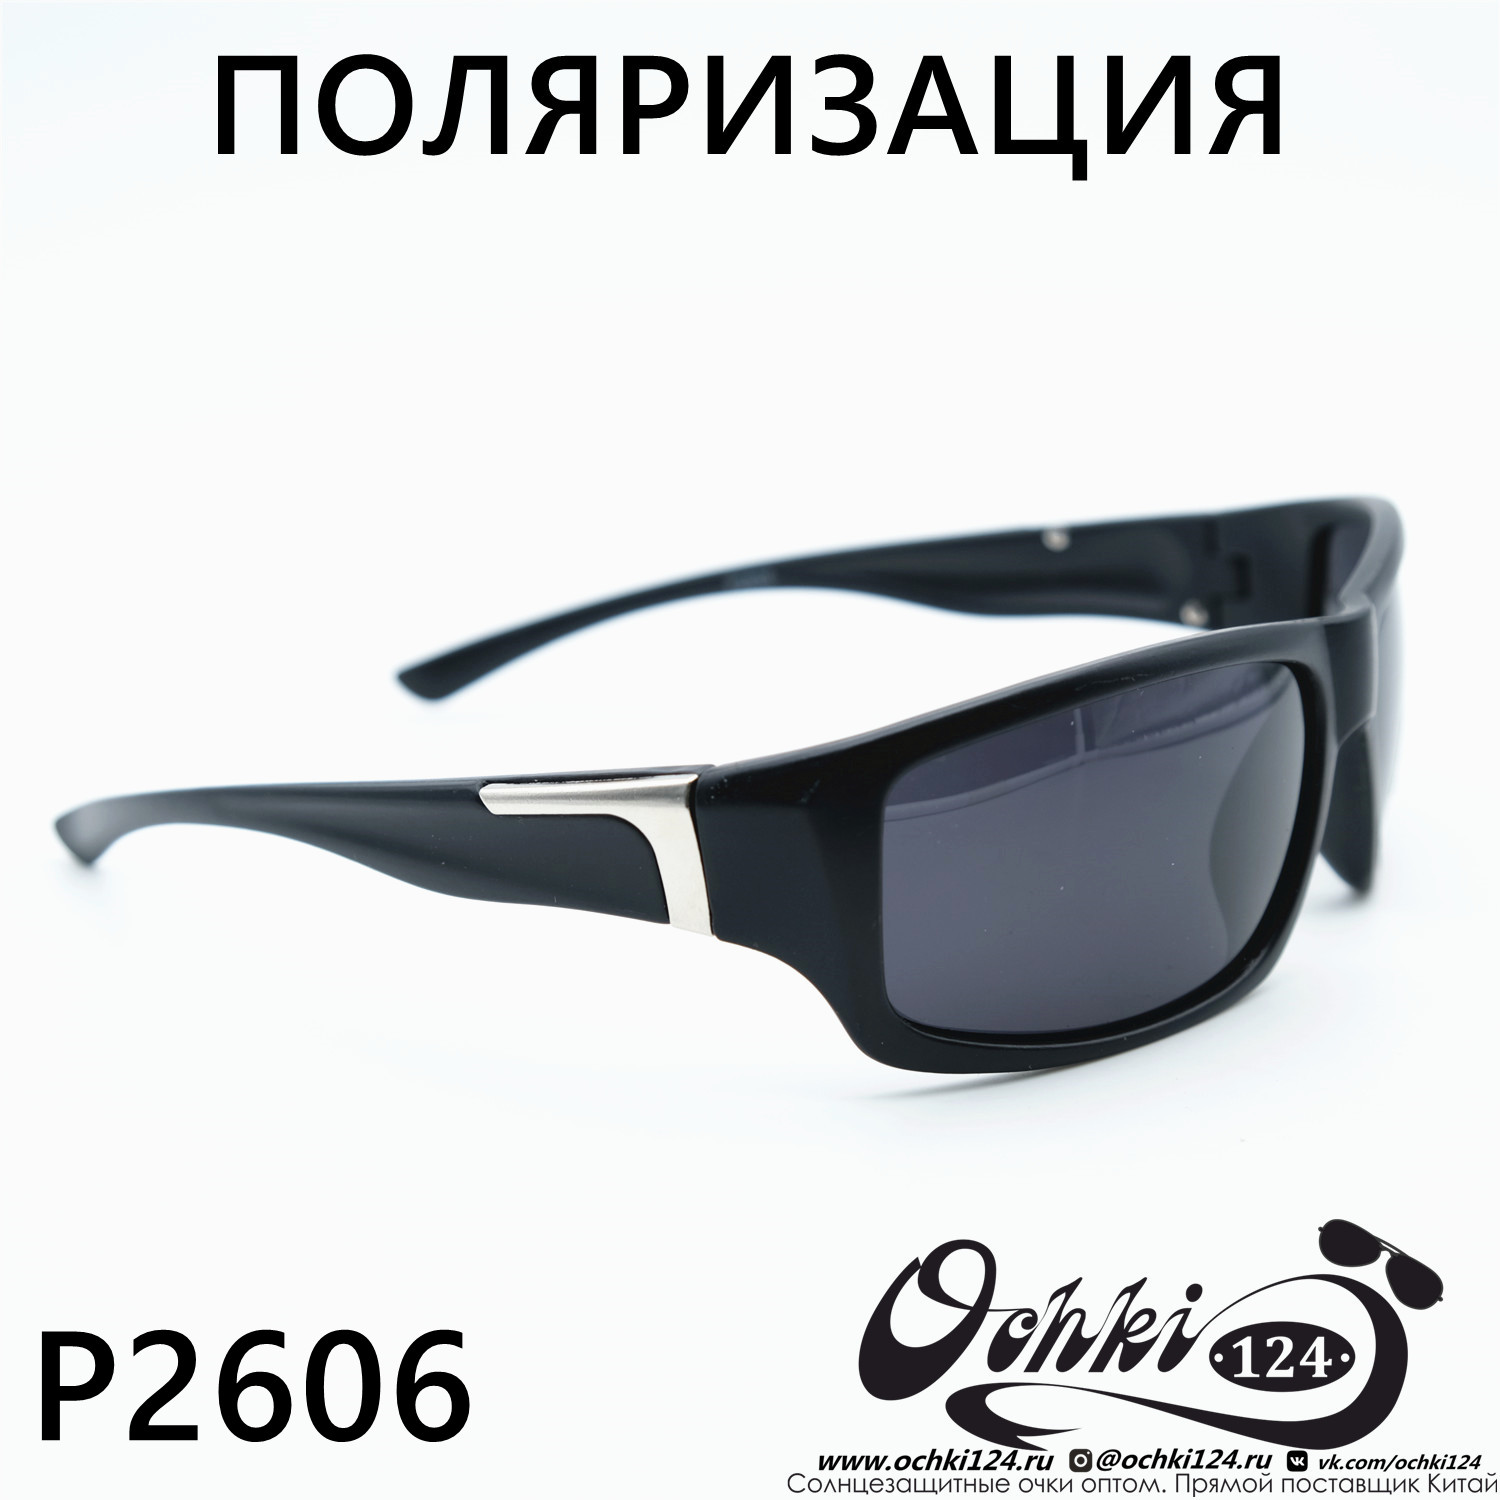  Солнцезащитные очки картинка Мужские MATRIUXT  Прямоугольные P2606-C2 